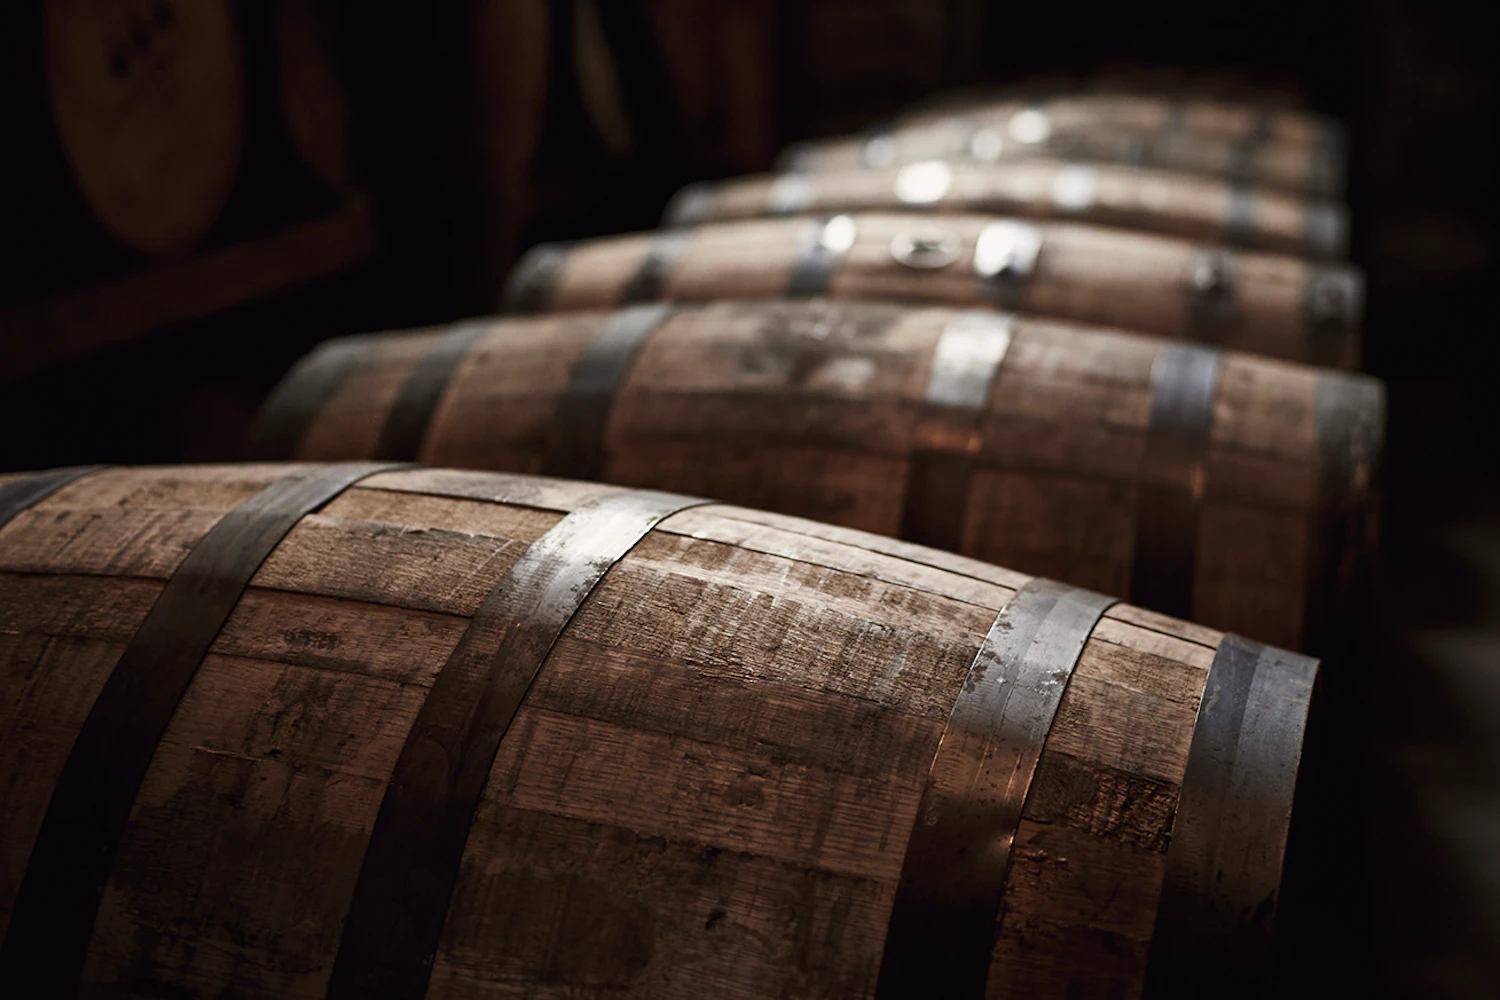 ウイスキーの樽材エキス[1]。ウイスキーの熟成に用いられる「熟成樽材」の1つ「スパニッシュオーク樽」から抽出したサントリー独自の成分。肌荒れを防ぎ、しっとり感のある肌へ導く。ちなみにスパニッシュオークはポリフェノールを豊富に含んでいる